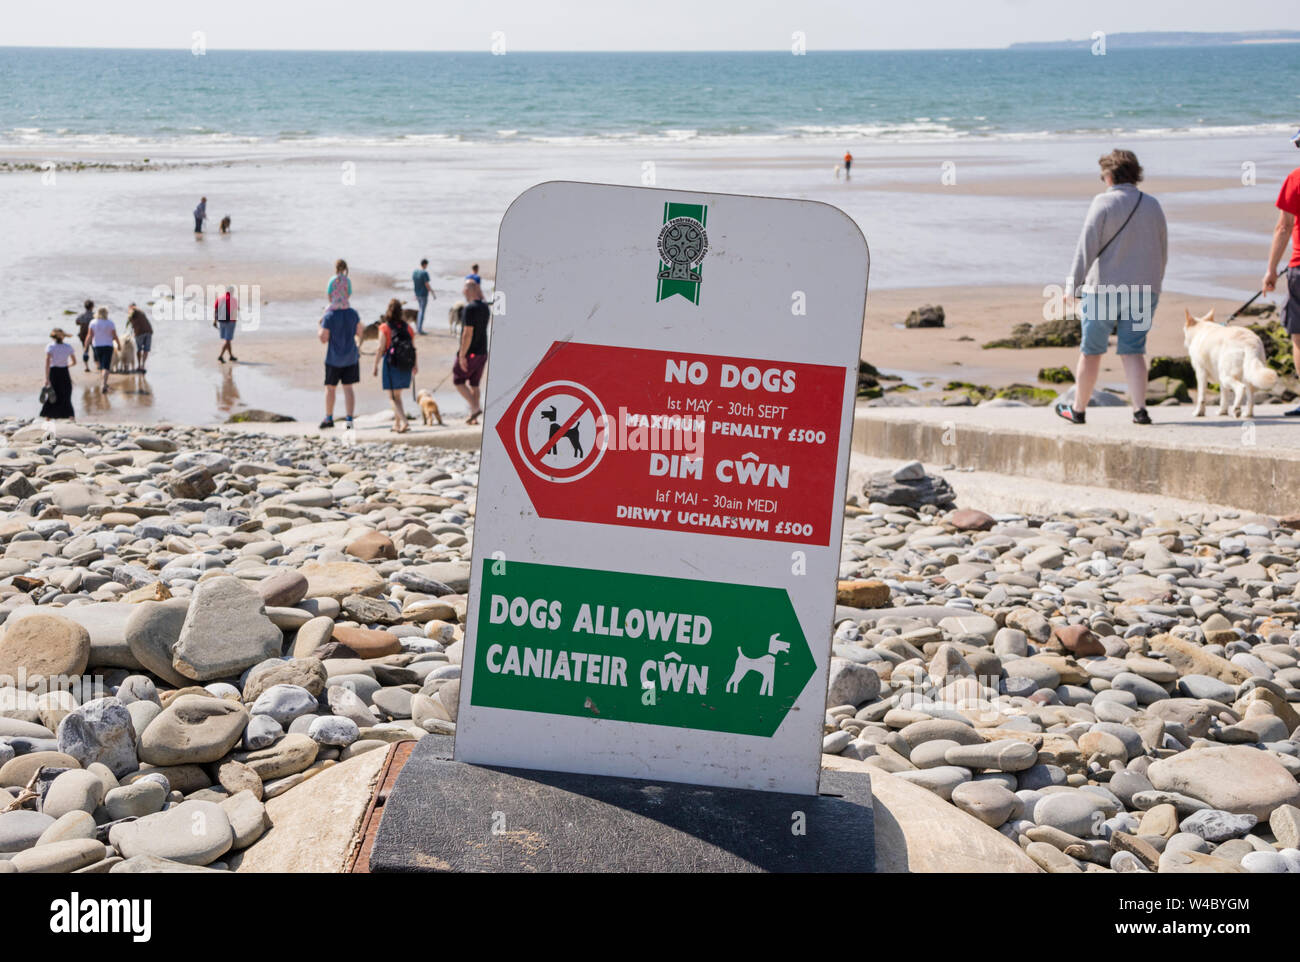 A la plage avec les restrictions sur l'accès pour les chiens, l'Angleterre, Royaume-Uni Banque D'Images